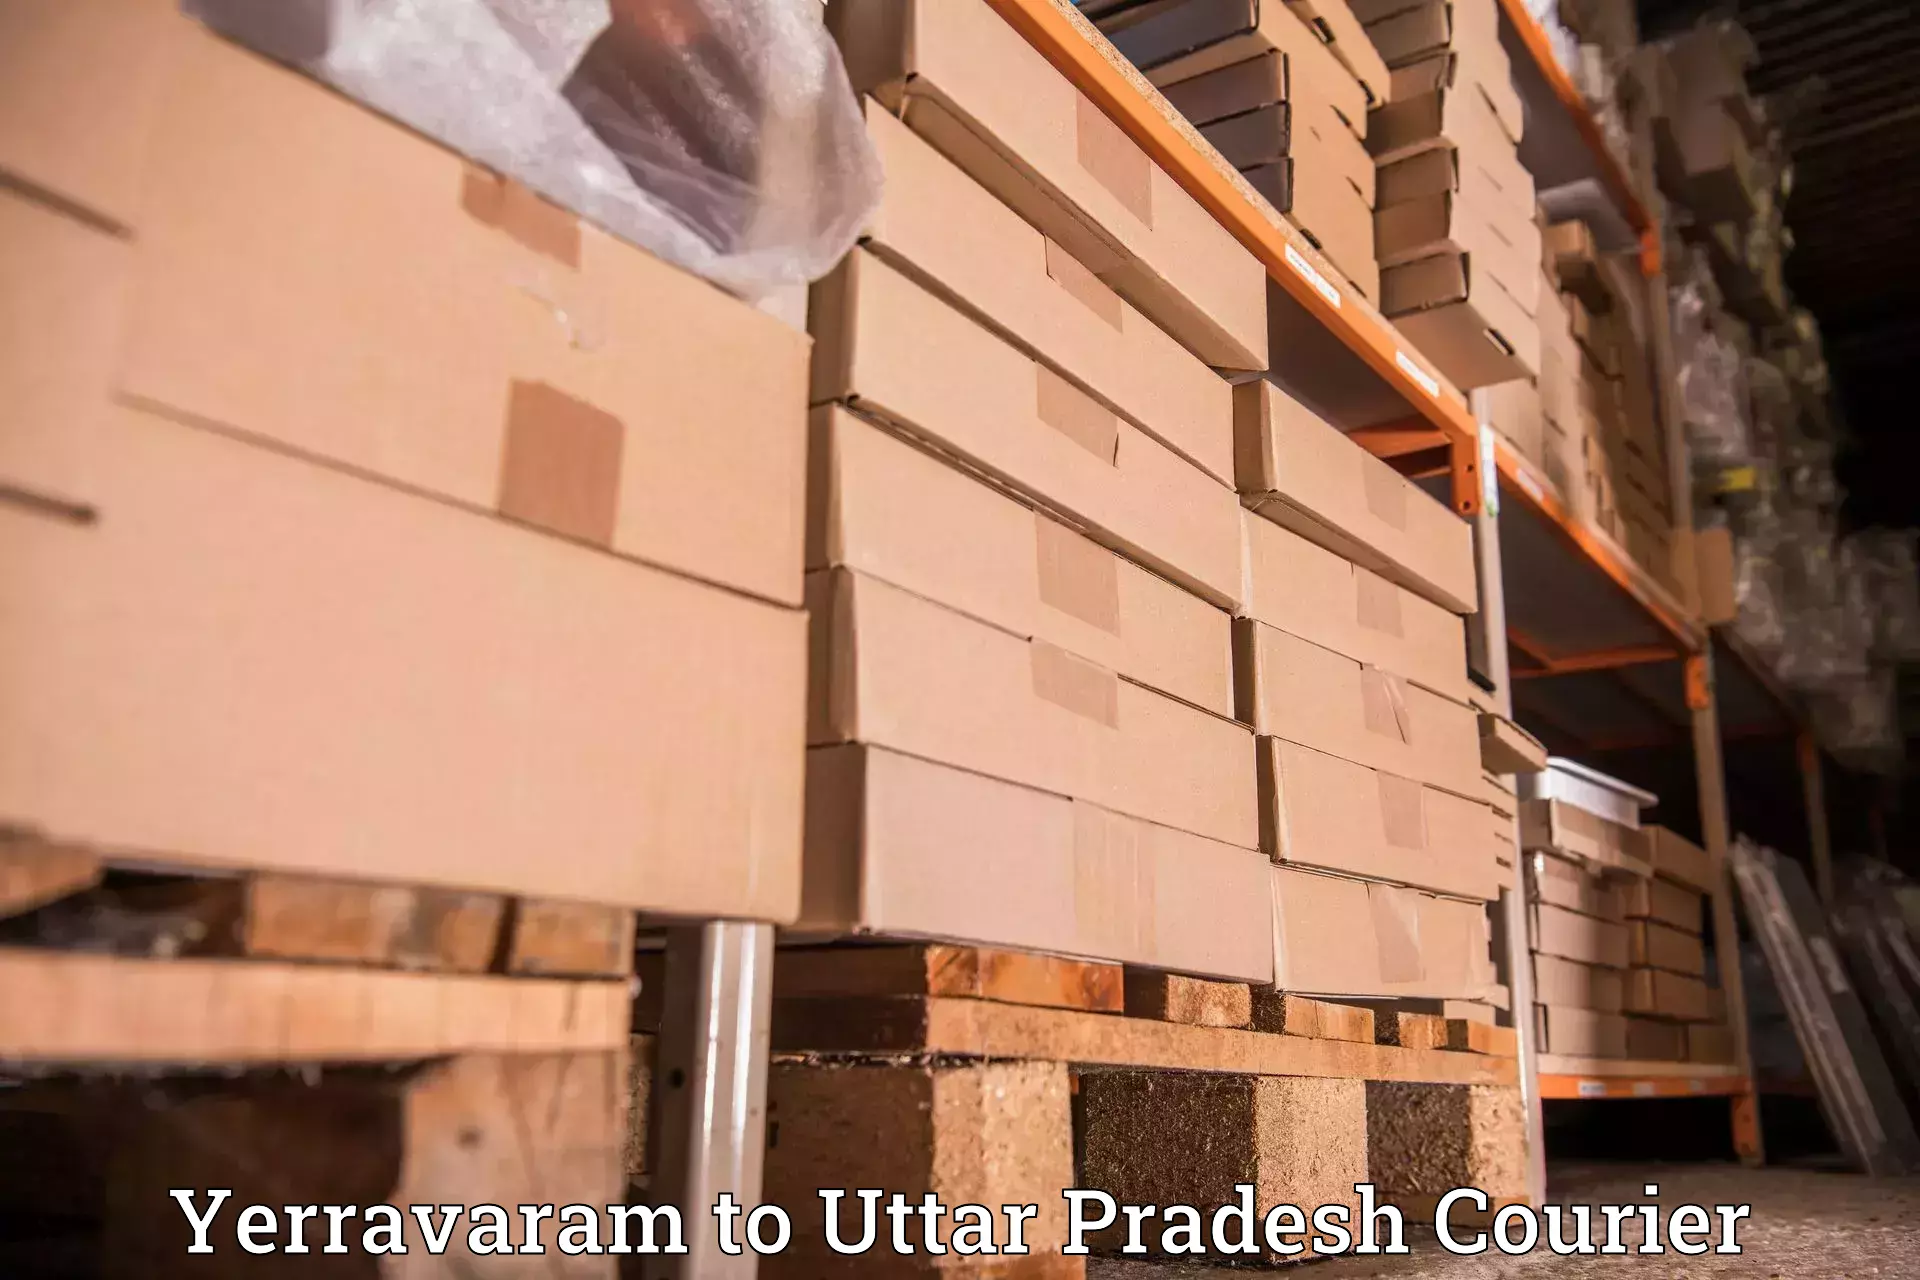 Parcel service for businesses Yerravaram to Kumarganj